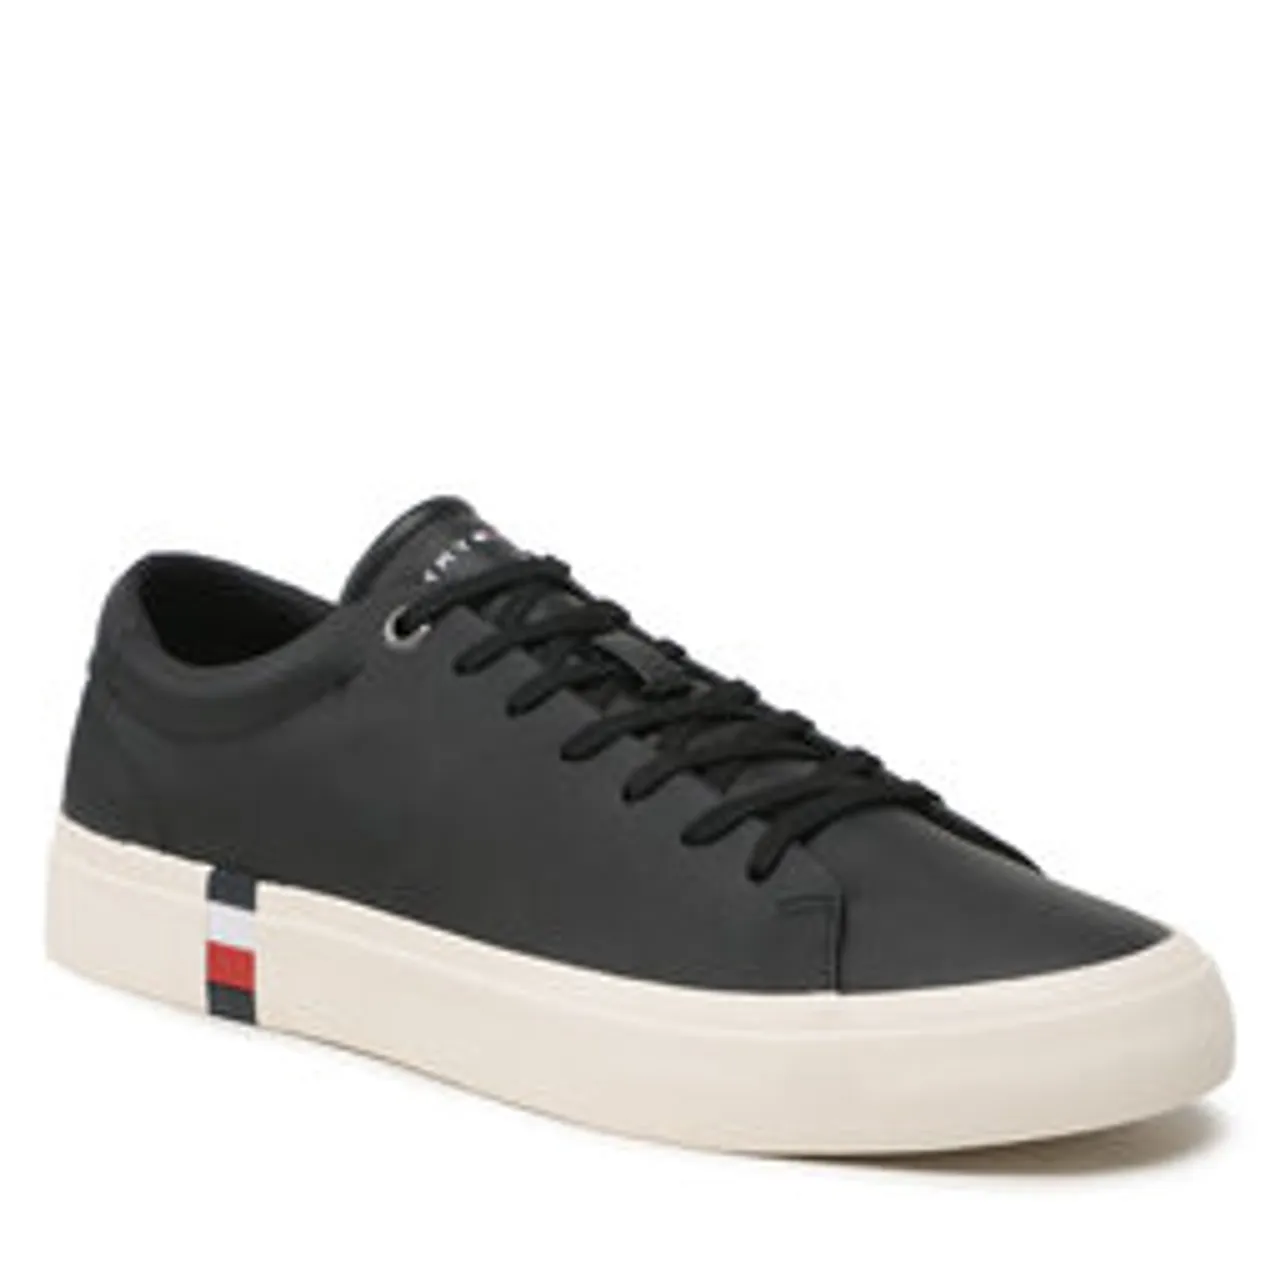 Sneakers aus Stoff Tommy Hilfiger Corporate Leather Detal Vulc FM0FM04589 Black BDS